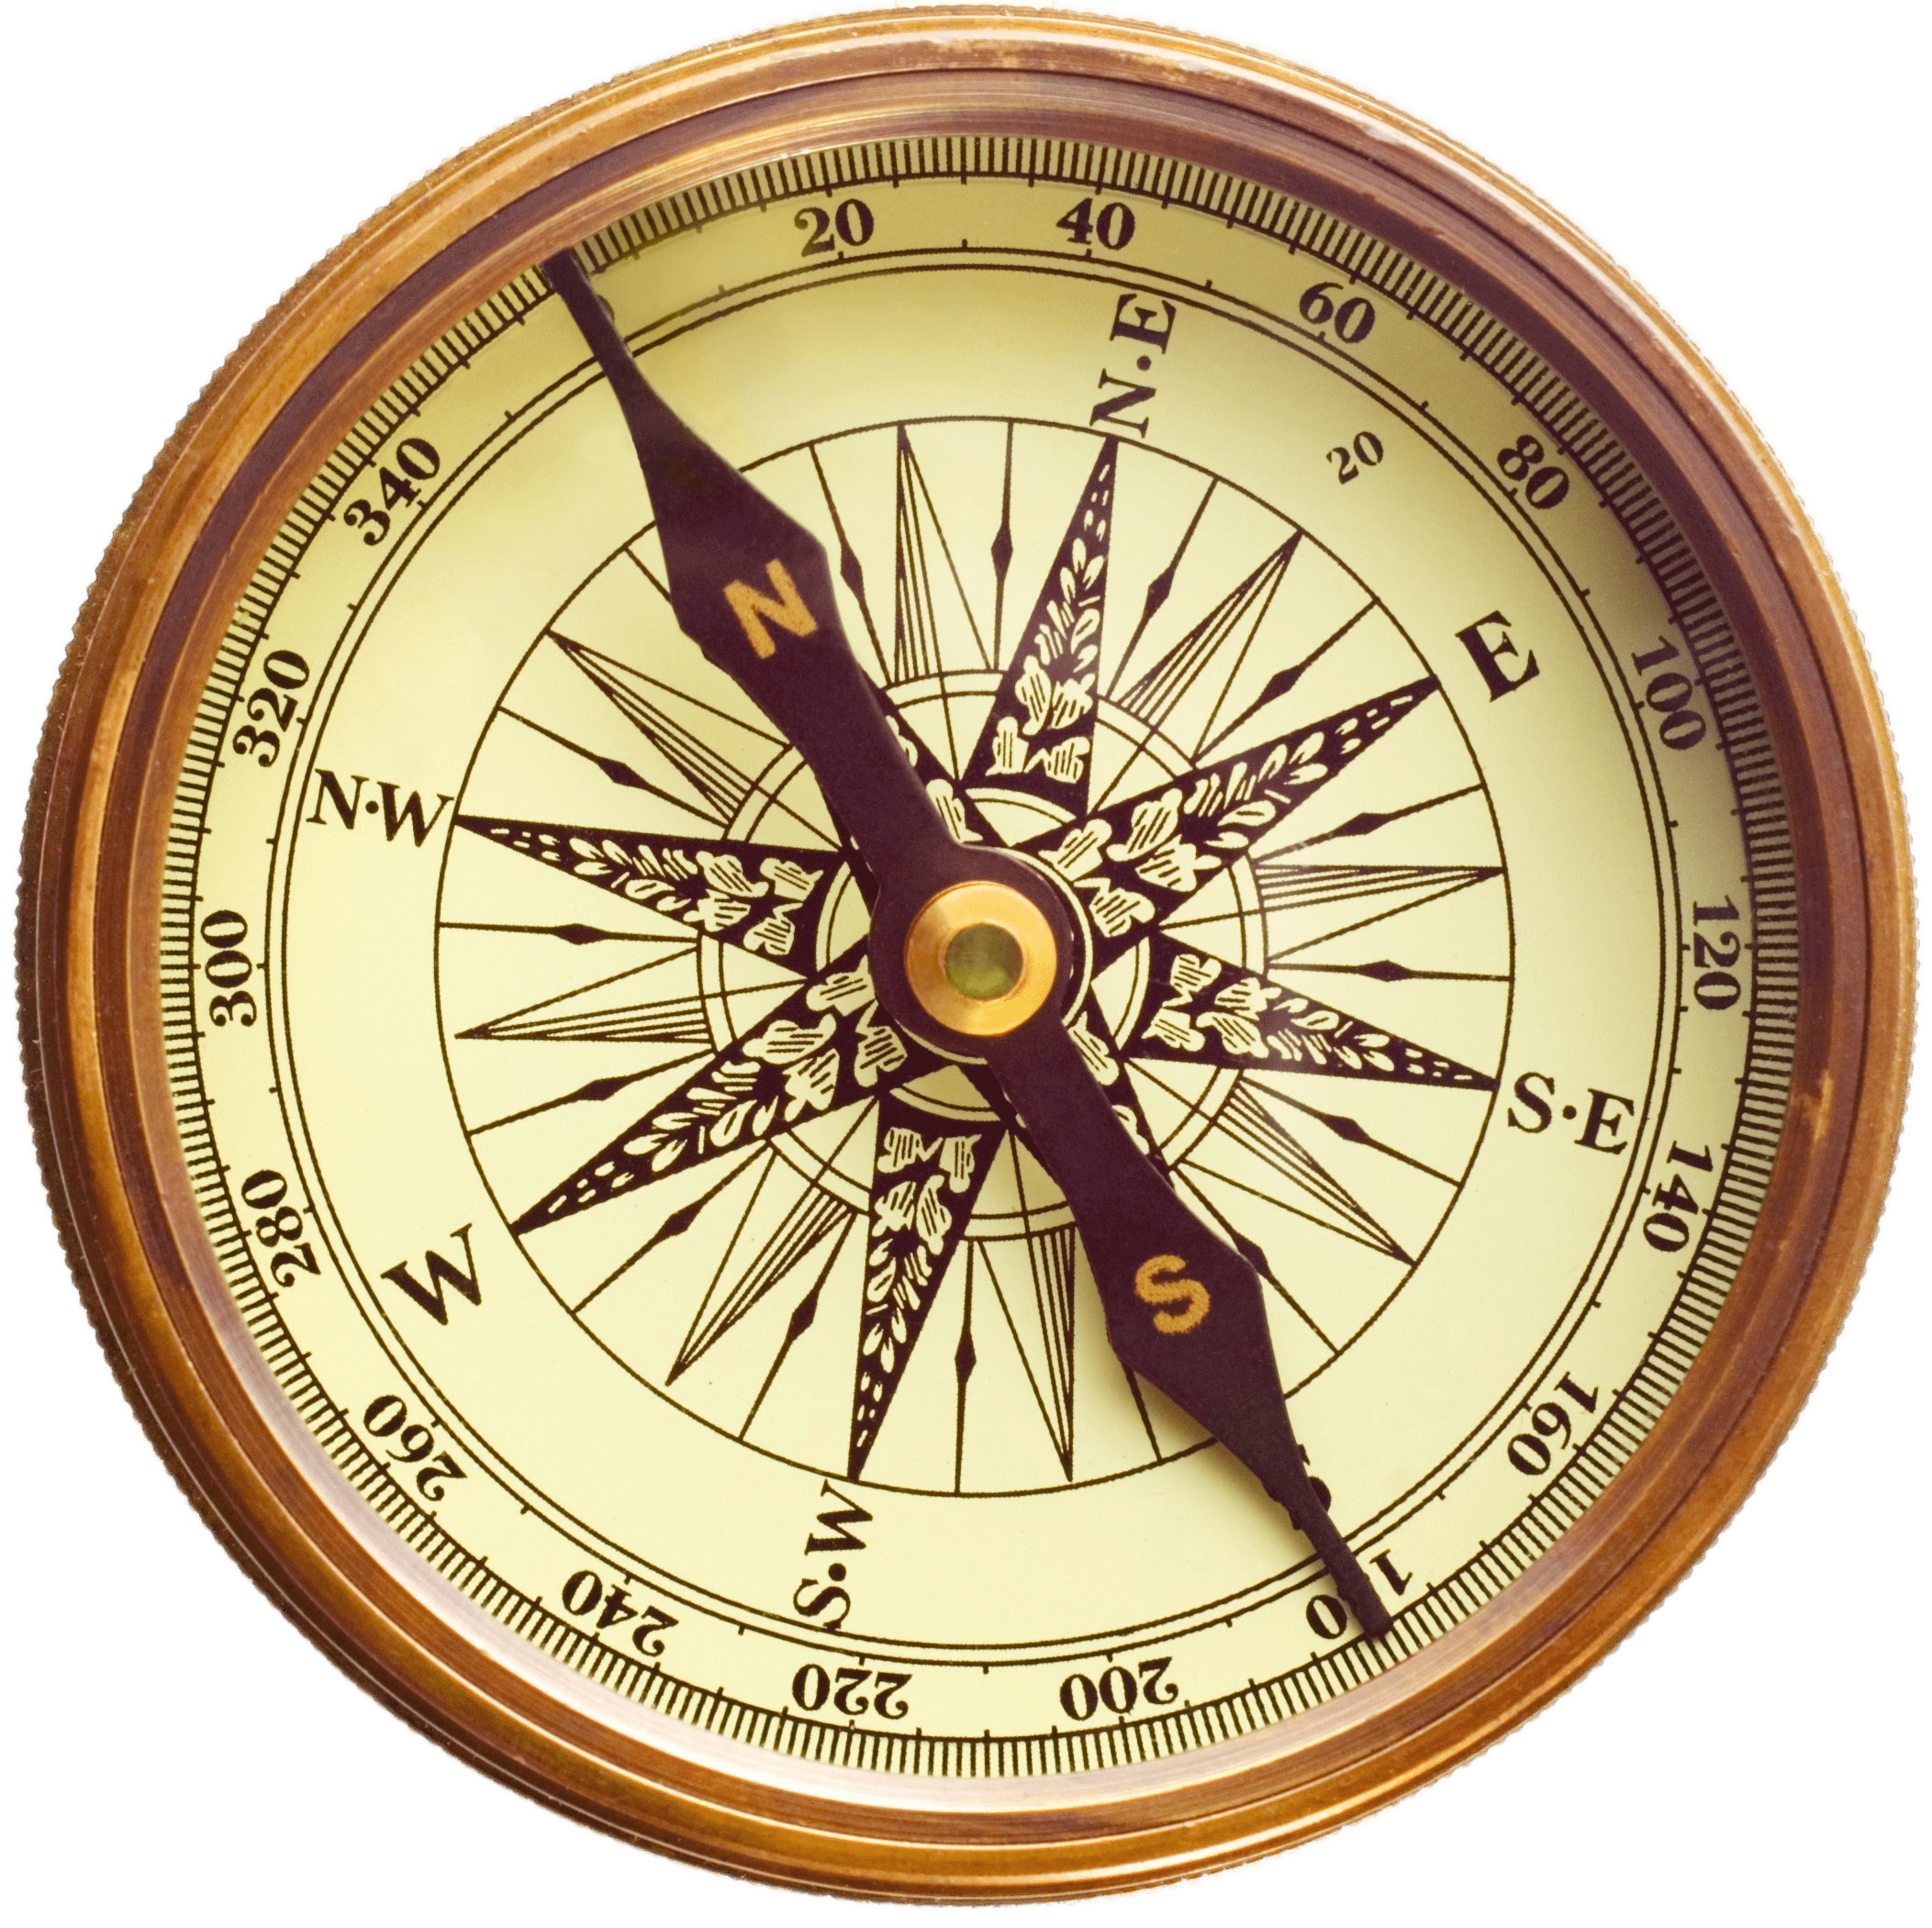 Compass s. Компас Флавио Джойя. Древний компас компас Флавио Джойя. Компас Эйнштейна-Аншютца.